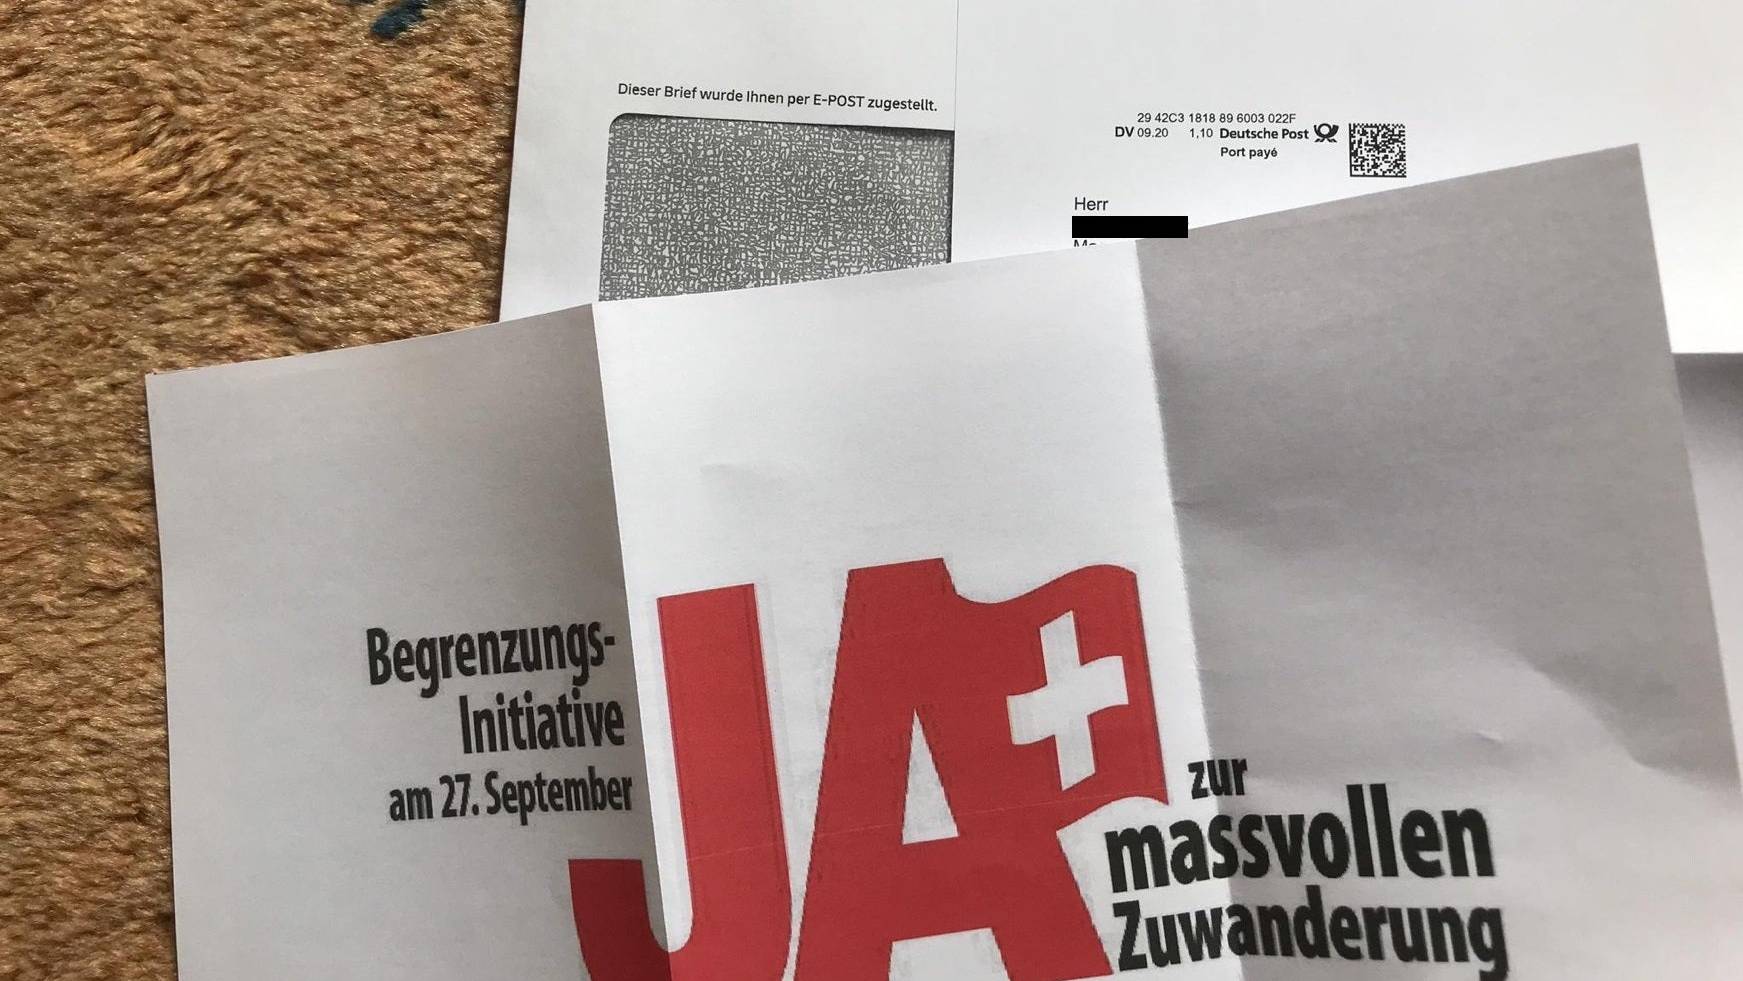 Dieser Brief wurde diese Woche an viele Schweizer Haushalte versandt - über die deutsche Post.